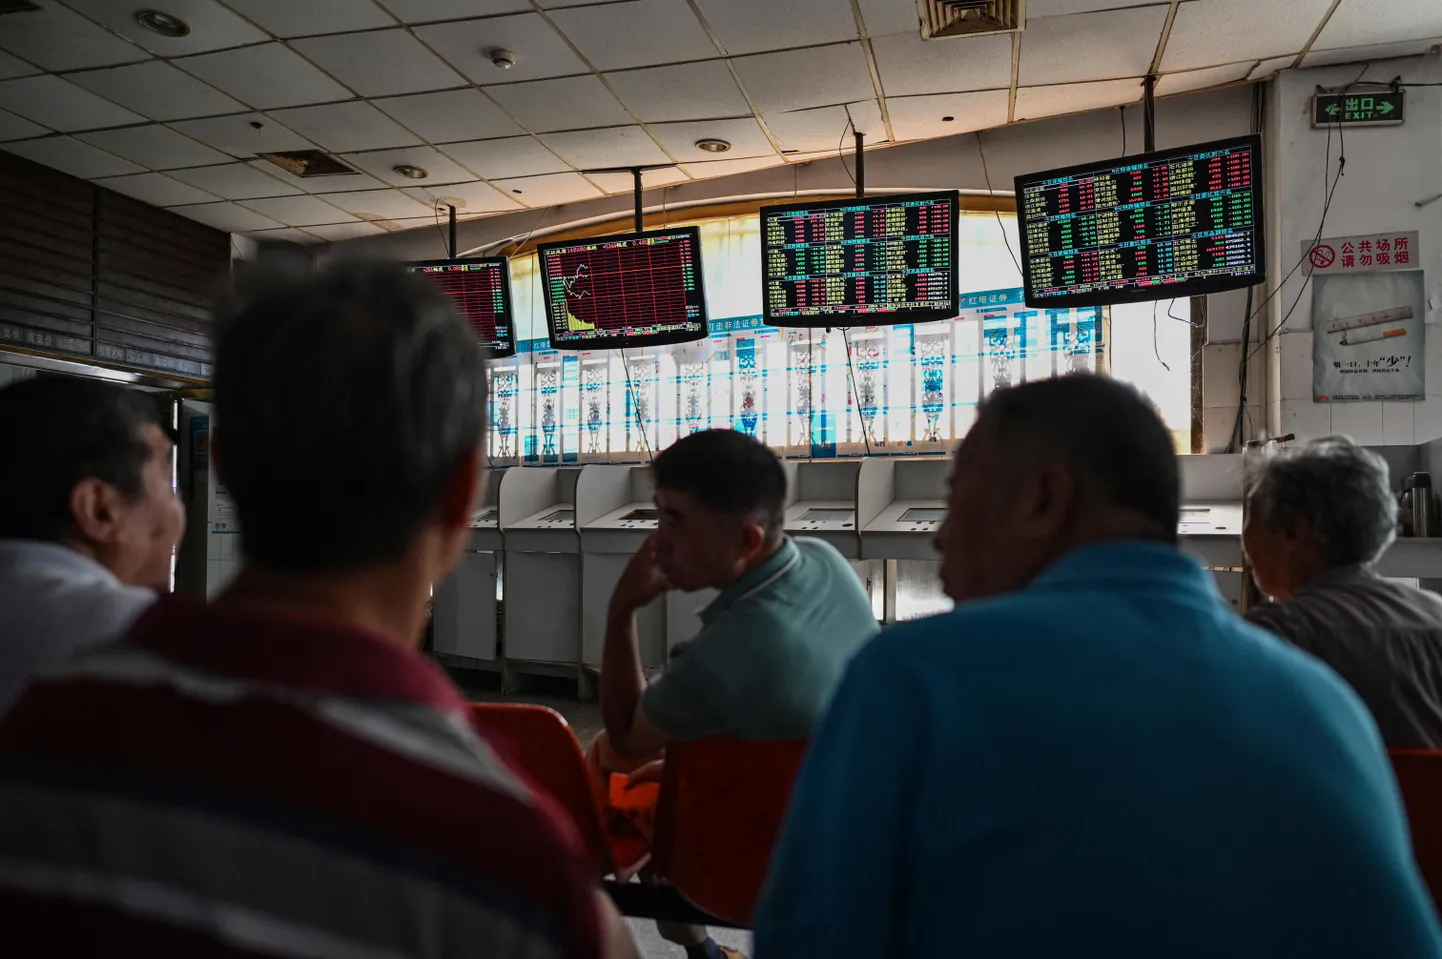 Hiina investorid jälgivad maaklerfirmas aktsiaturgu